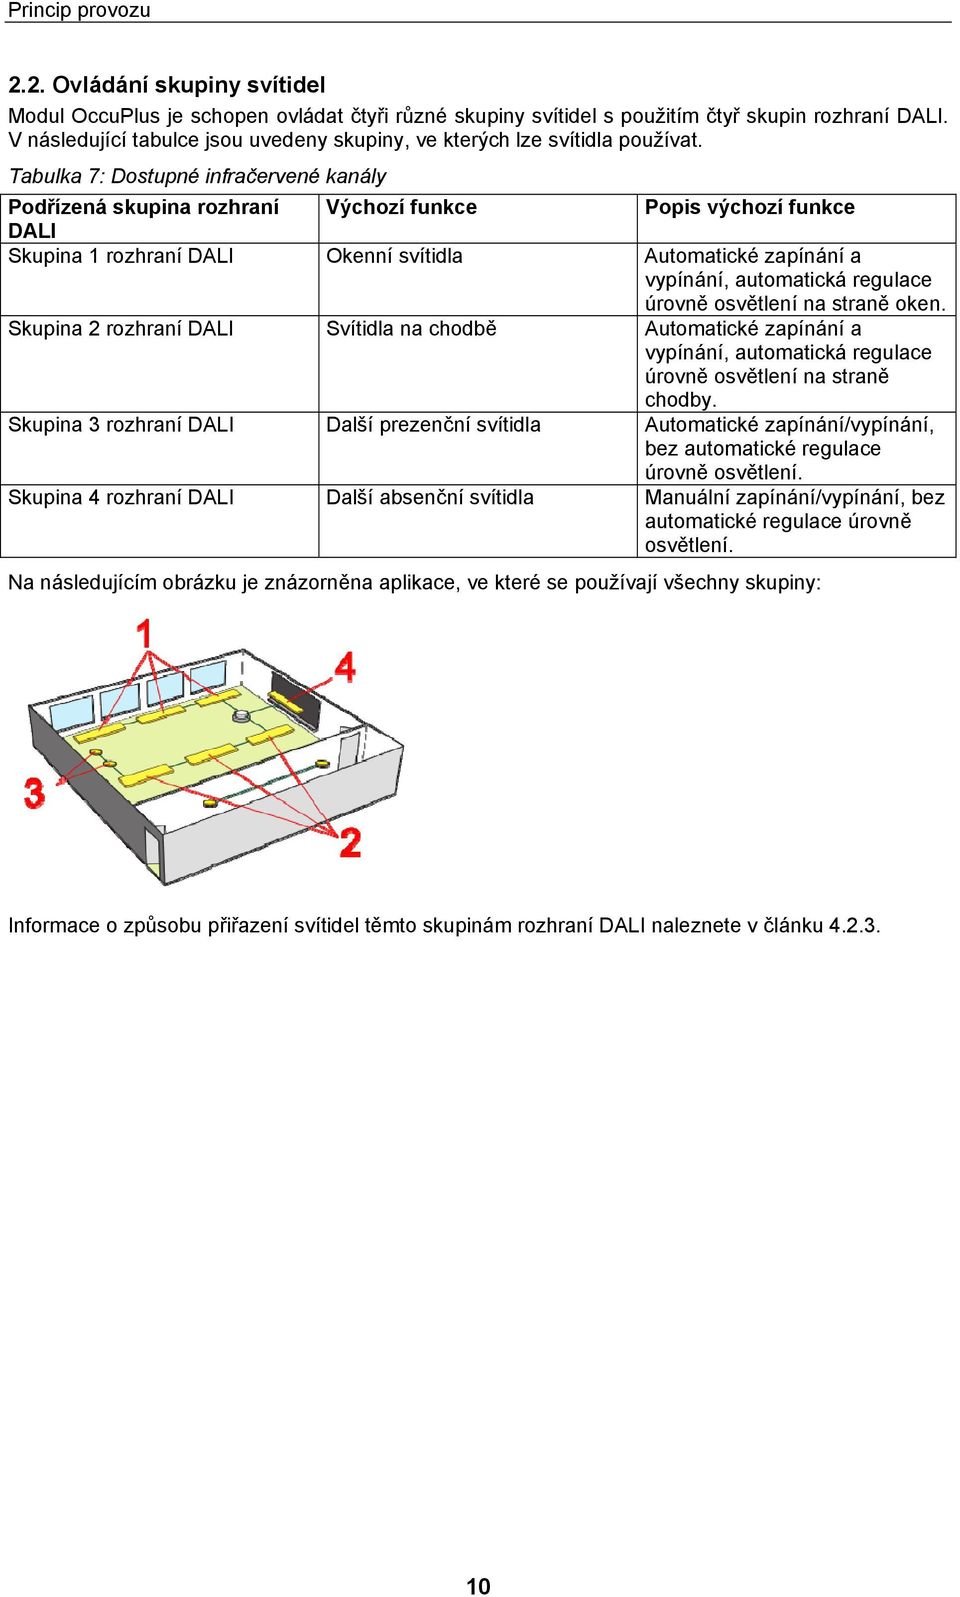 Tabulka 7: Dostupné infračervené kanály Podřízená skupina rozhraní Výchozí funkce Popis výchozí funkce DALI Skupina 1 rozhraní DALI Okenní svítidla Automatické zapínání a vypínání, automatická